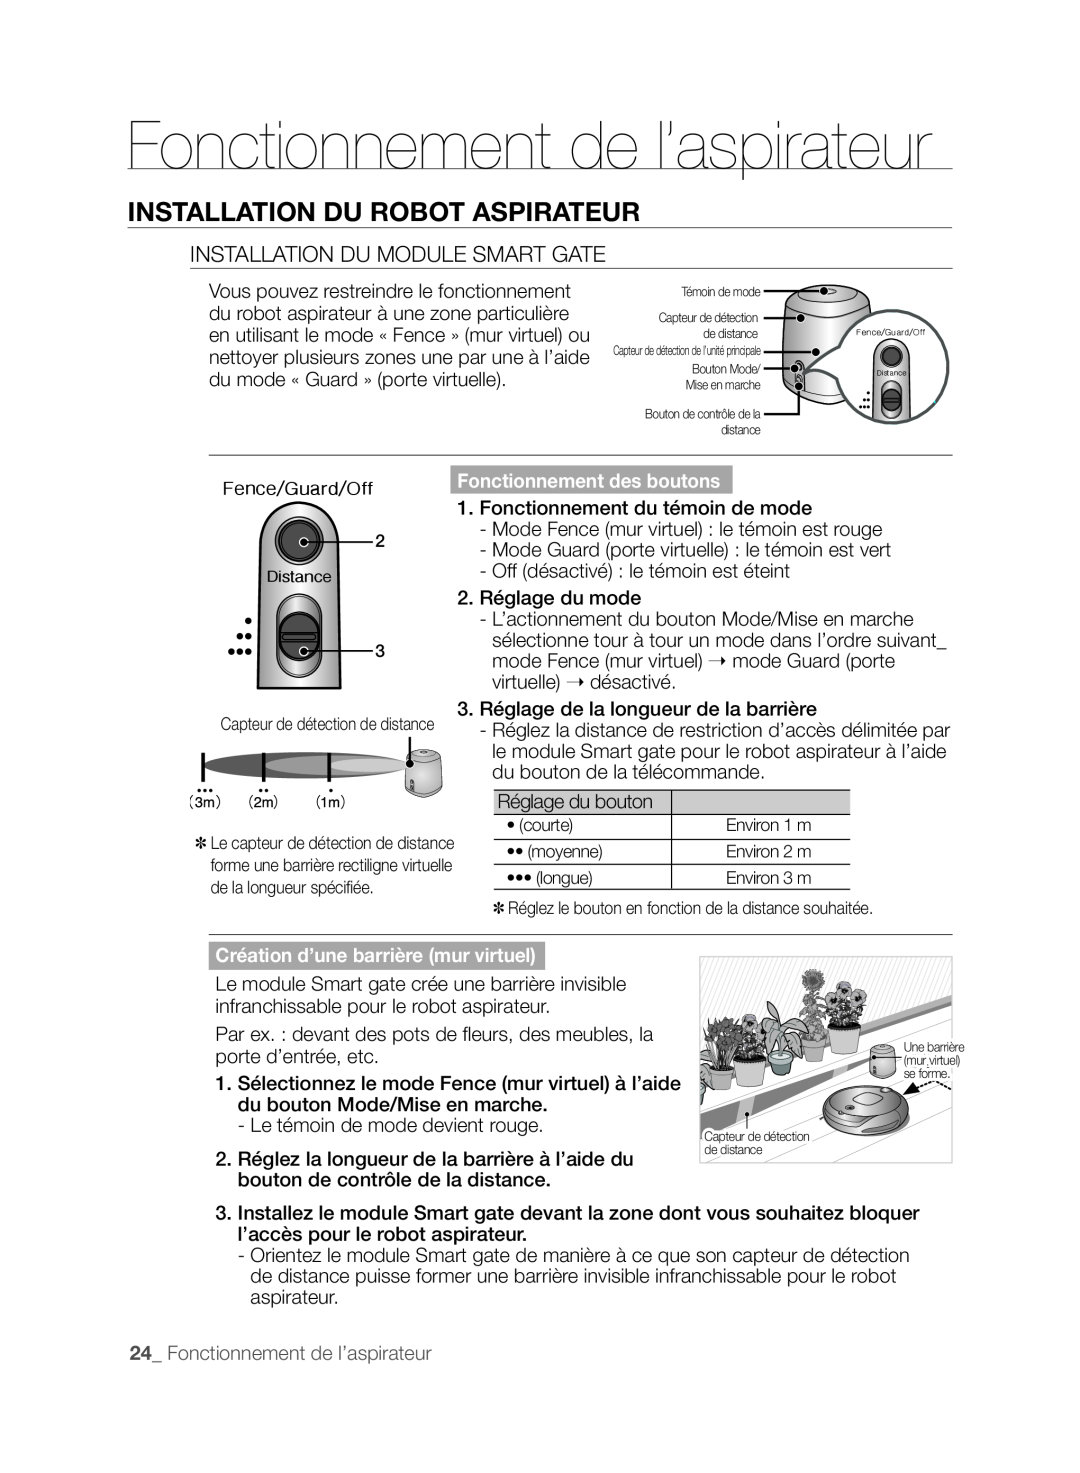 Samsung SR8830, VCR8830T1R Fonctionnement de l’aspirateur, Installation Du Robot Aspirateur, Fonctionnement des boutons 